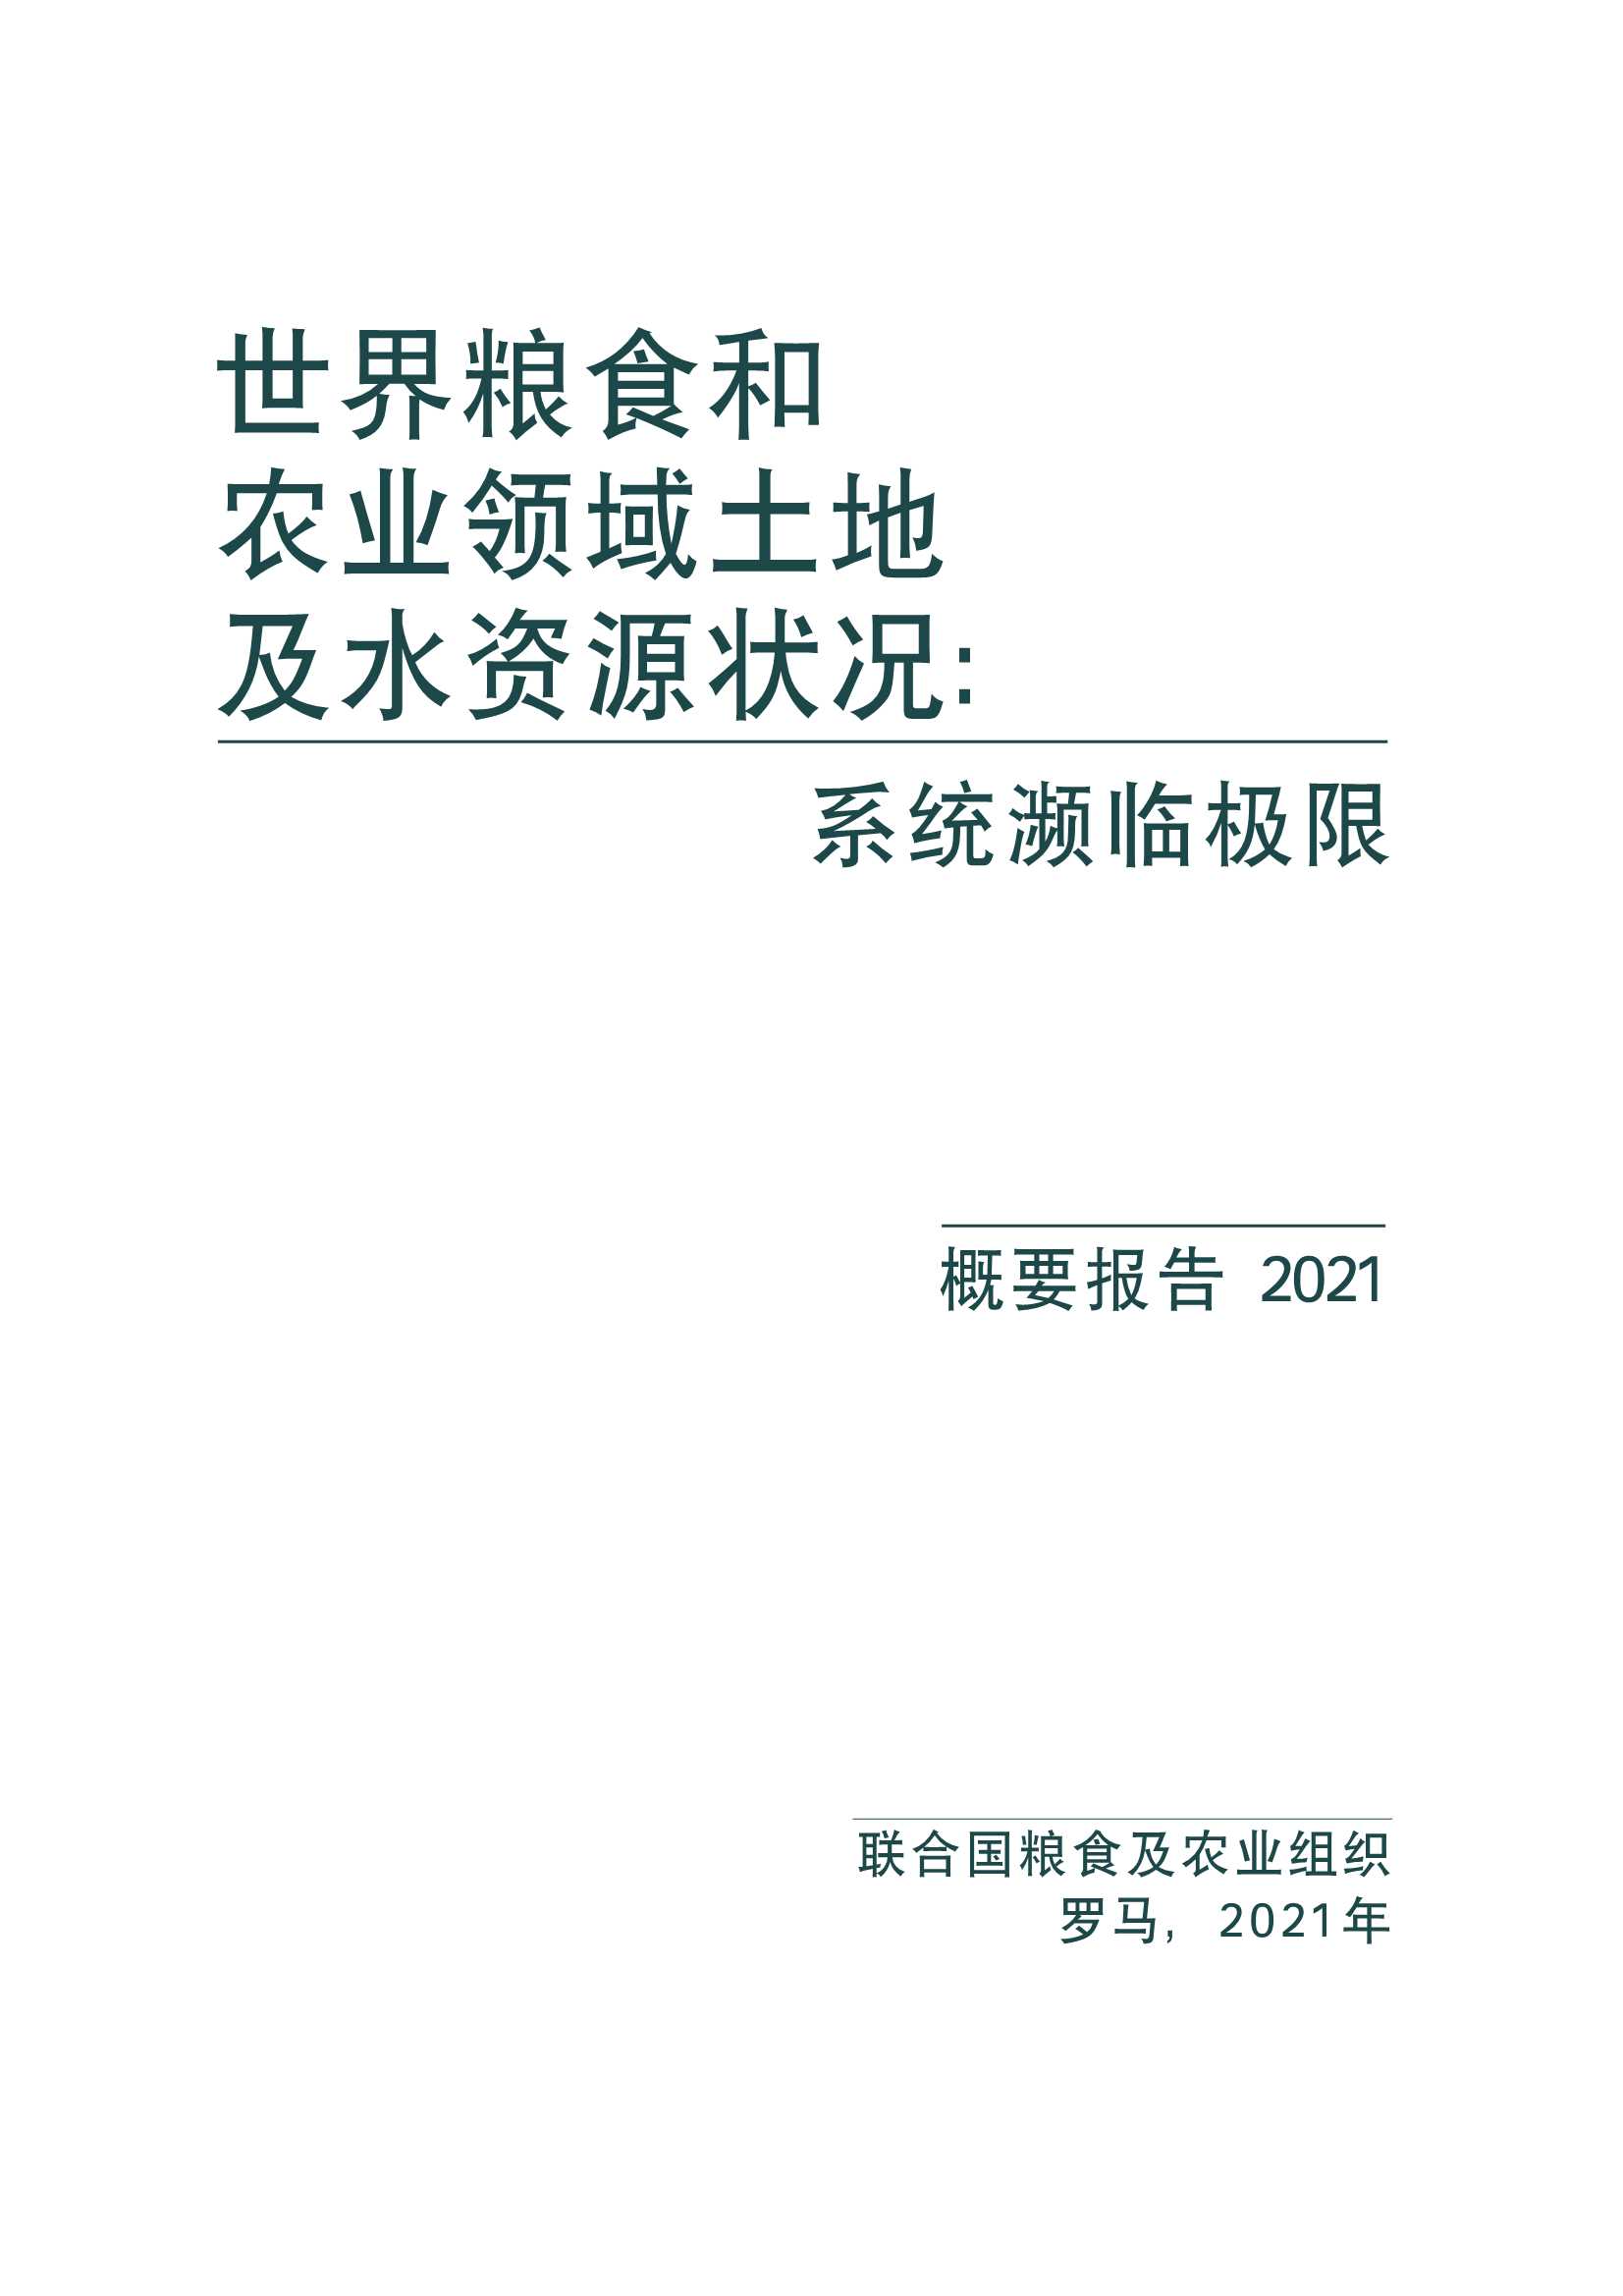 2021年世界粮食和农业领域土地及水资源状况中文报告-2021.12-82页